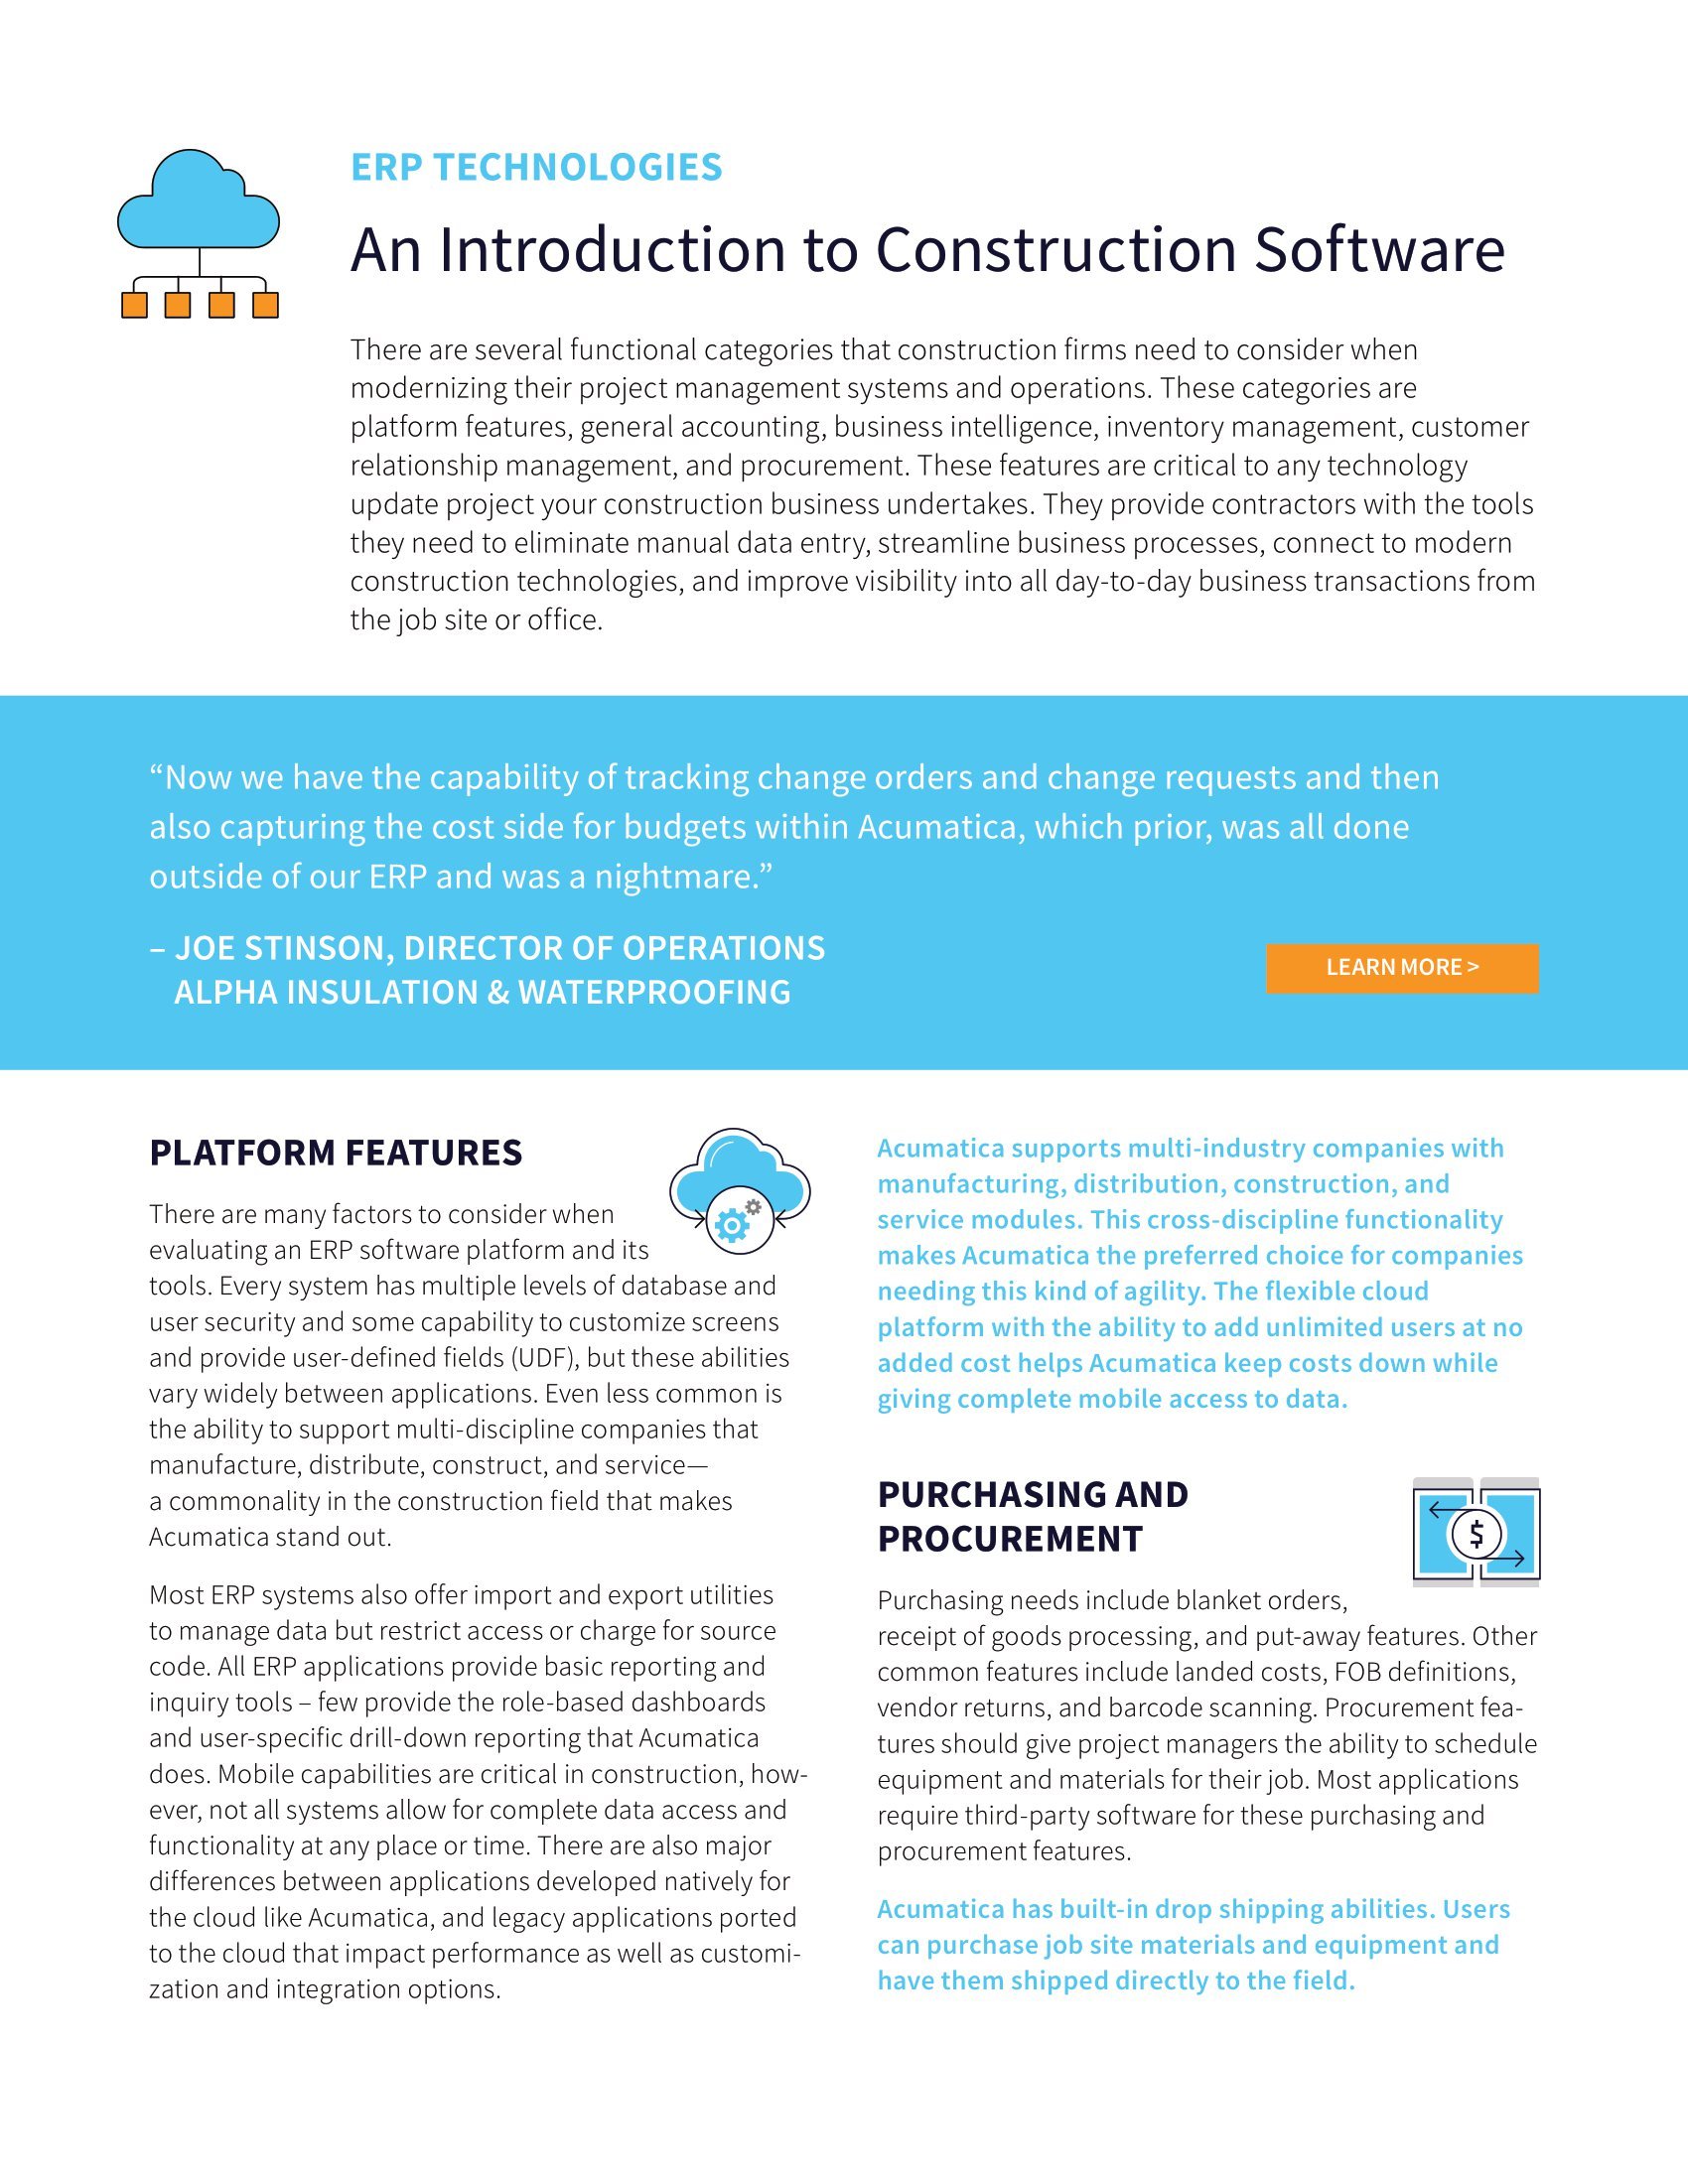 Se préparer à l’évolution de l’industrie de la construction avec une transformation numérique, page 1